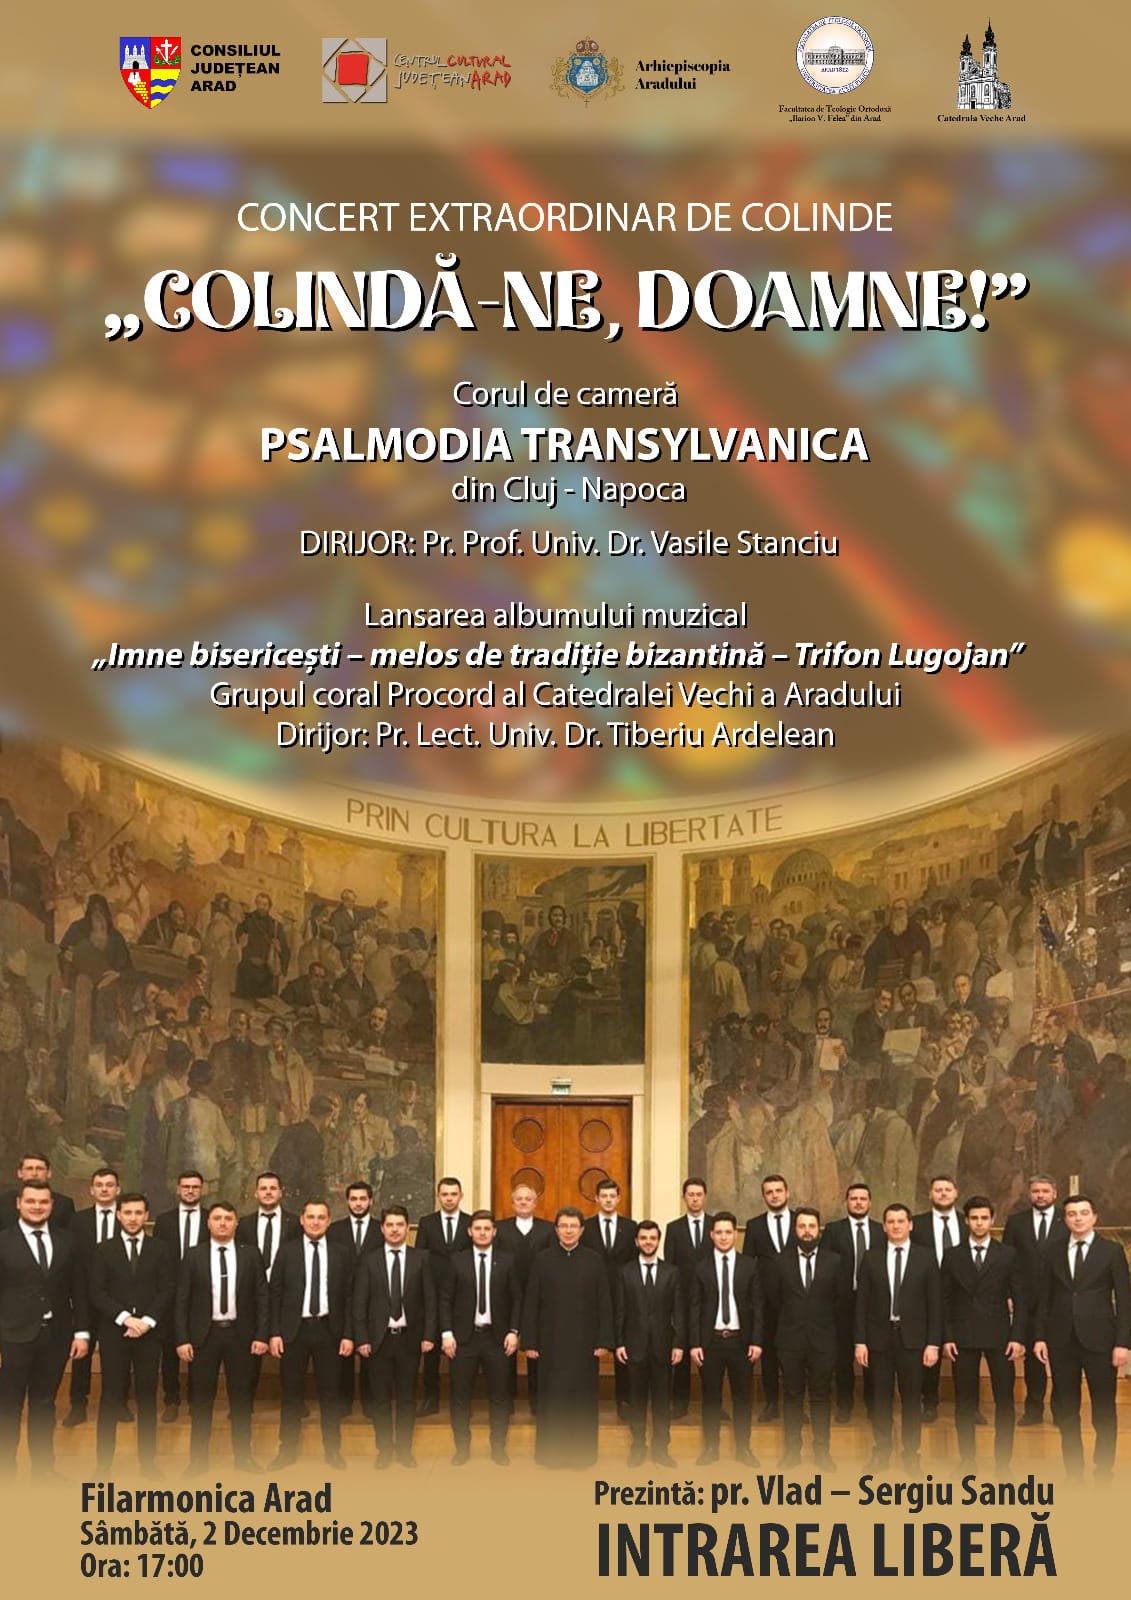 Corul de cameră PSALMODIA TRANSYLVANICA din Cluj-Napoca concertează la Arad